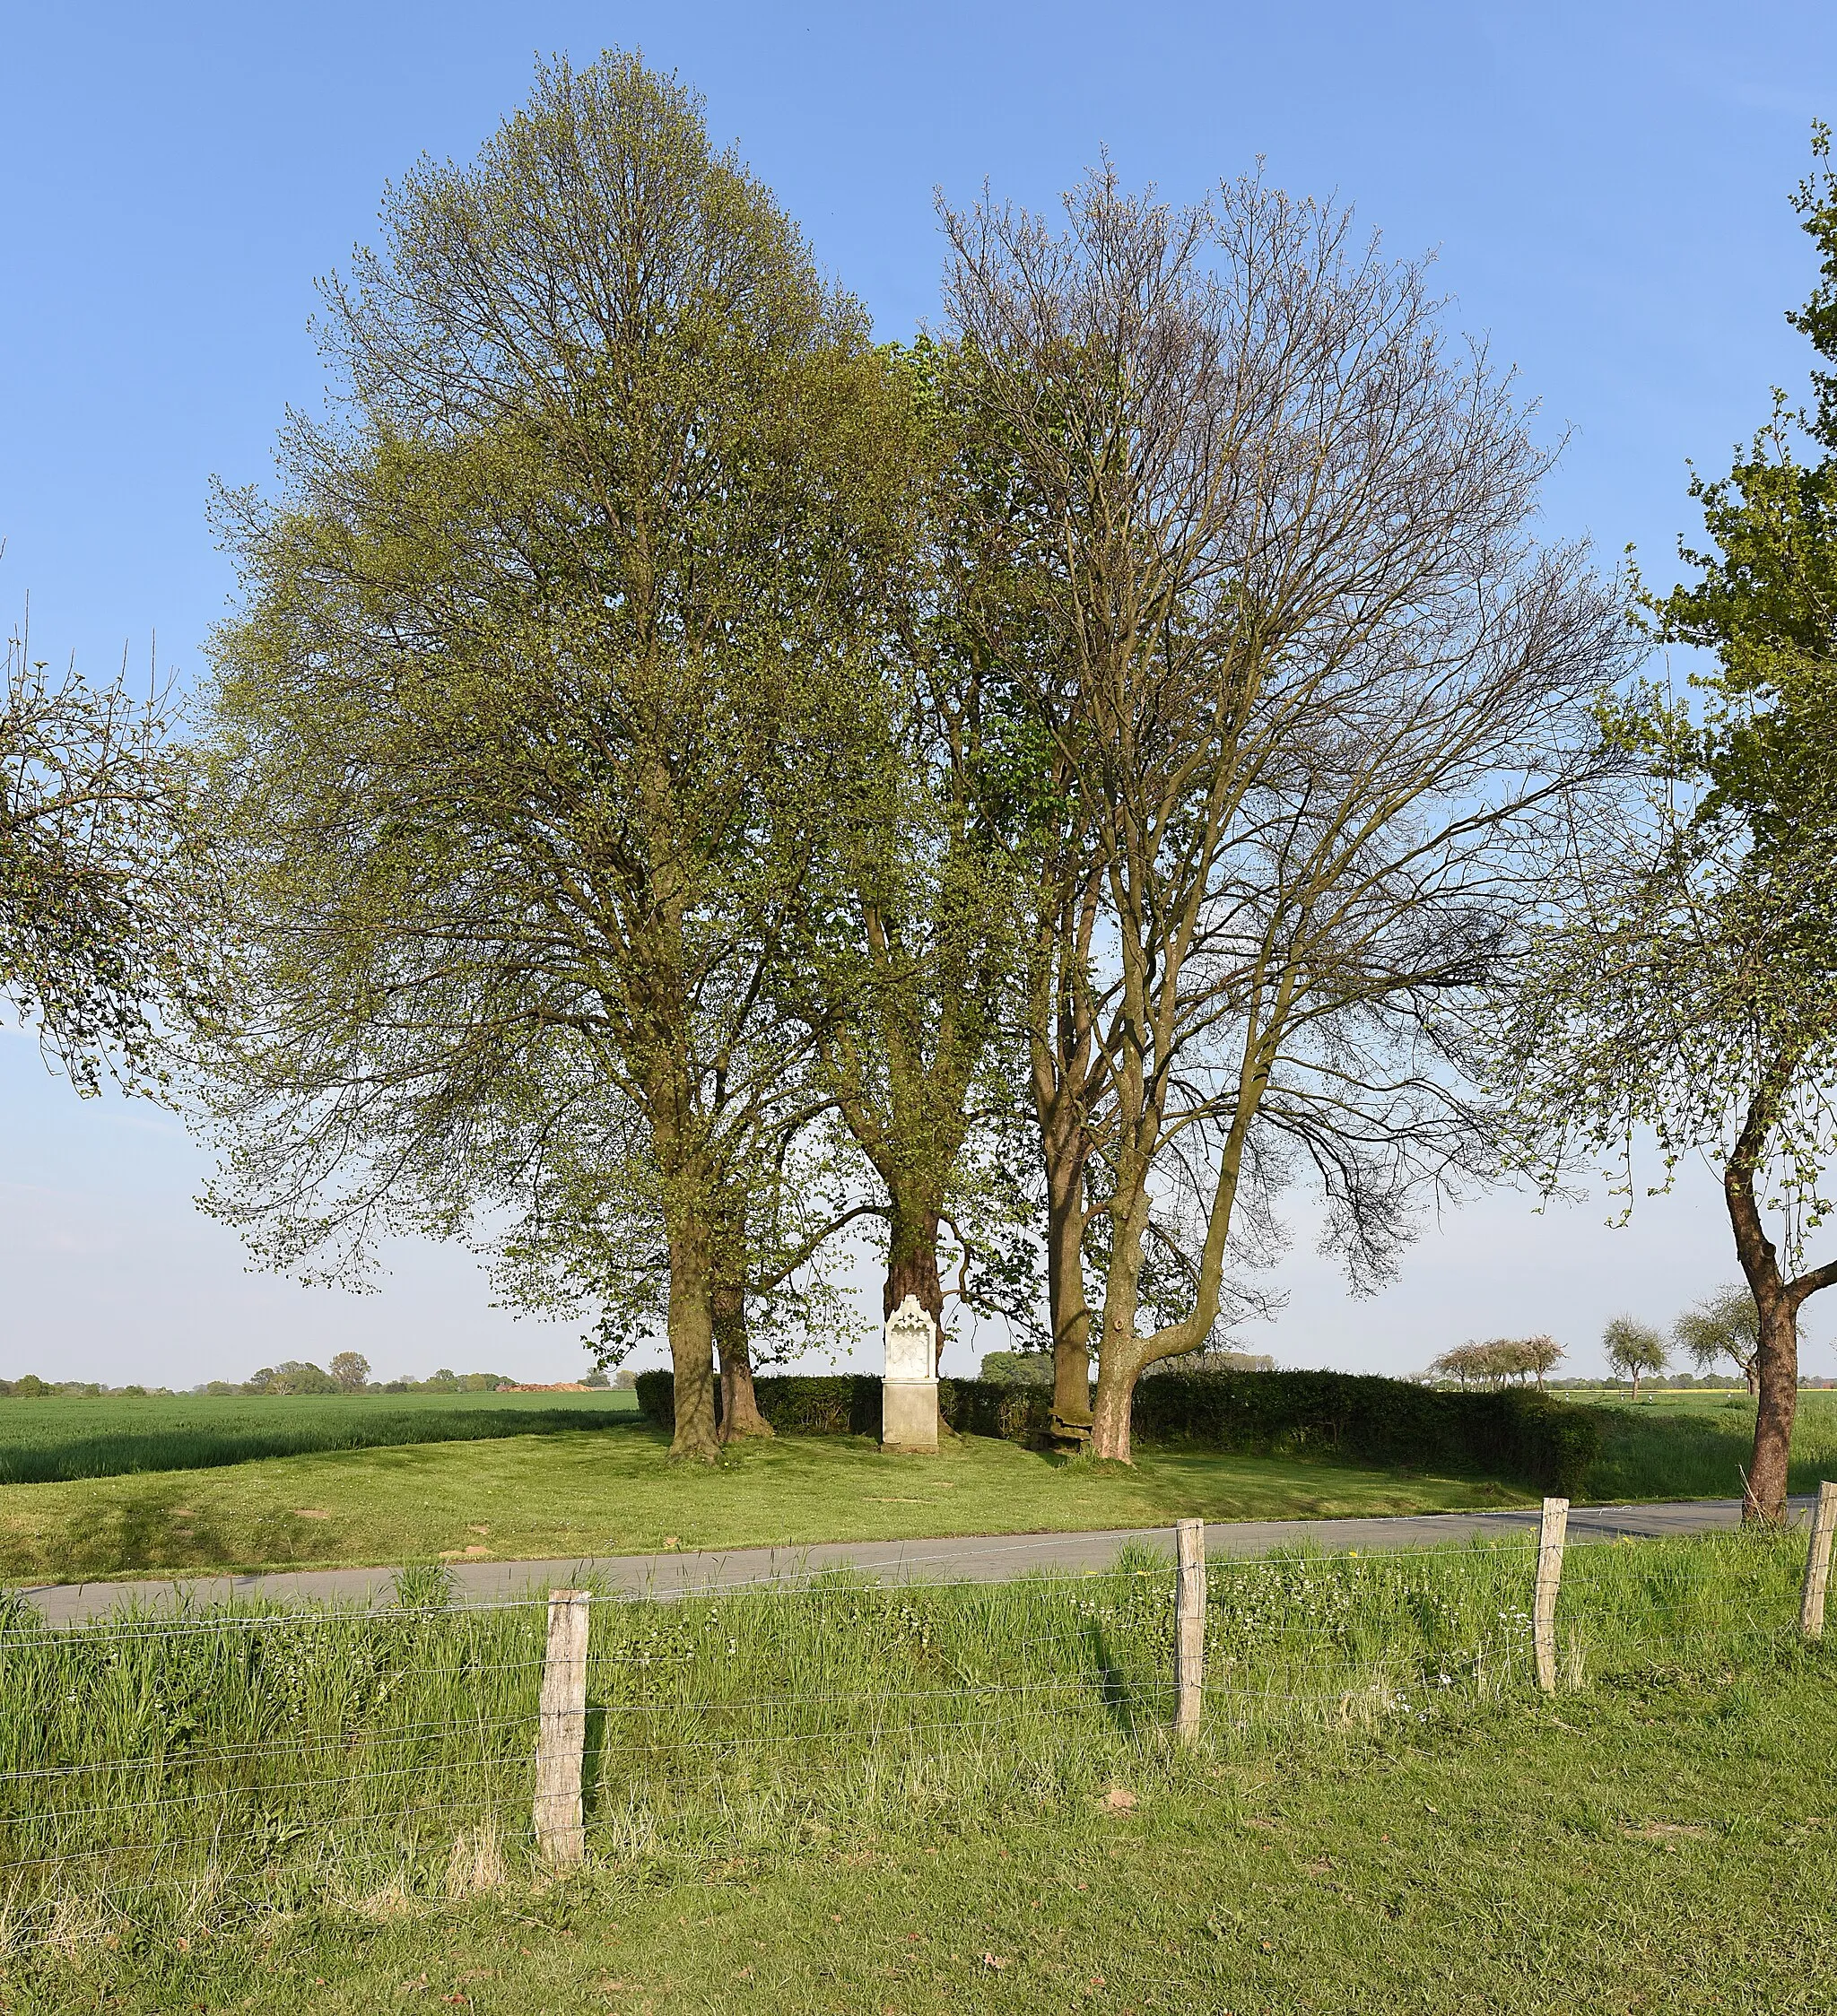 Photo showing: Ehemaliges Naturdenkmal „Kastanie“ im Kreis Soest in Lippetal bei Hultrop an der Straße Auf dem Tigge. Die Kastanie steht hinter dem Bildstock.
Koordinaten des Standortes: N 051° 38.909' O 008° 03.519'